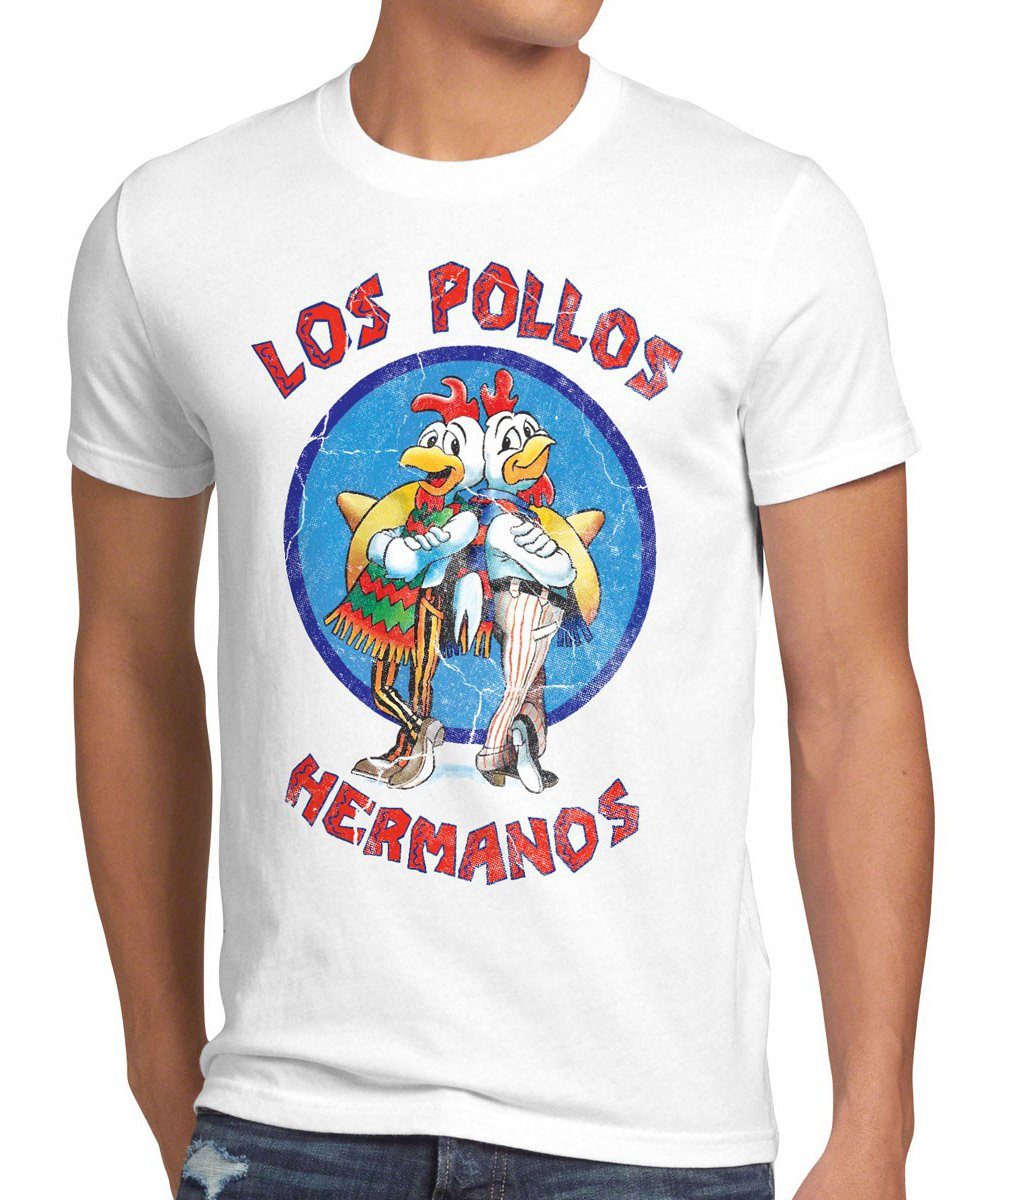 weiß Los heisenberg style3 white bad breaking walter hermanos Pollos chicken Herren T-Shirt Print-Shirt